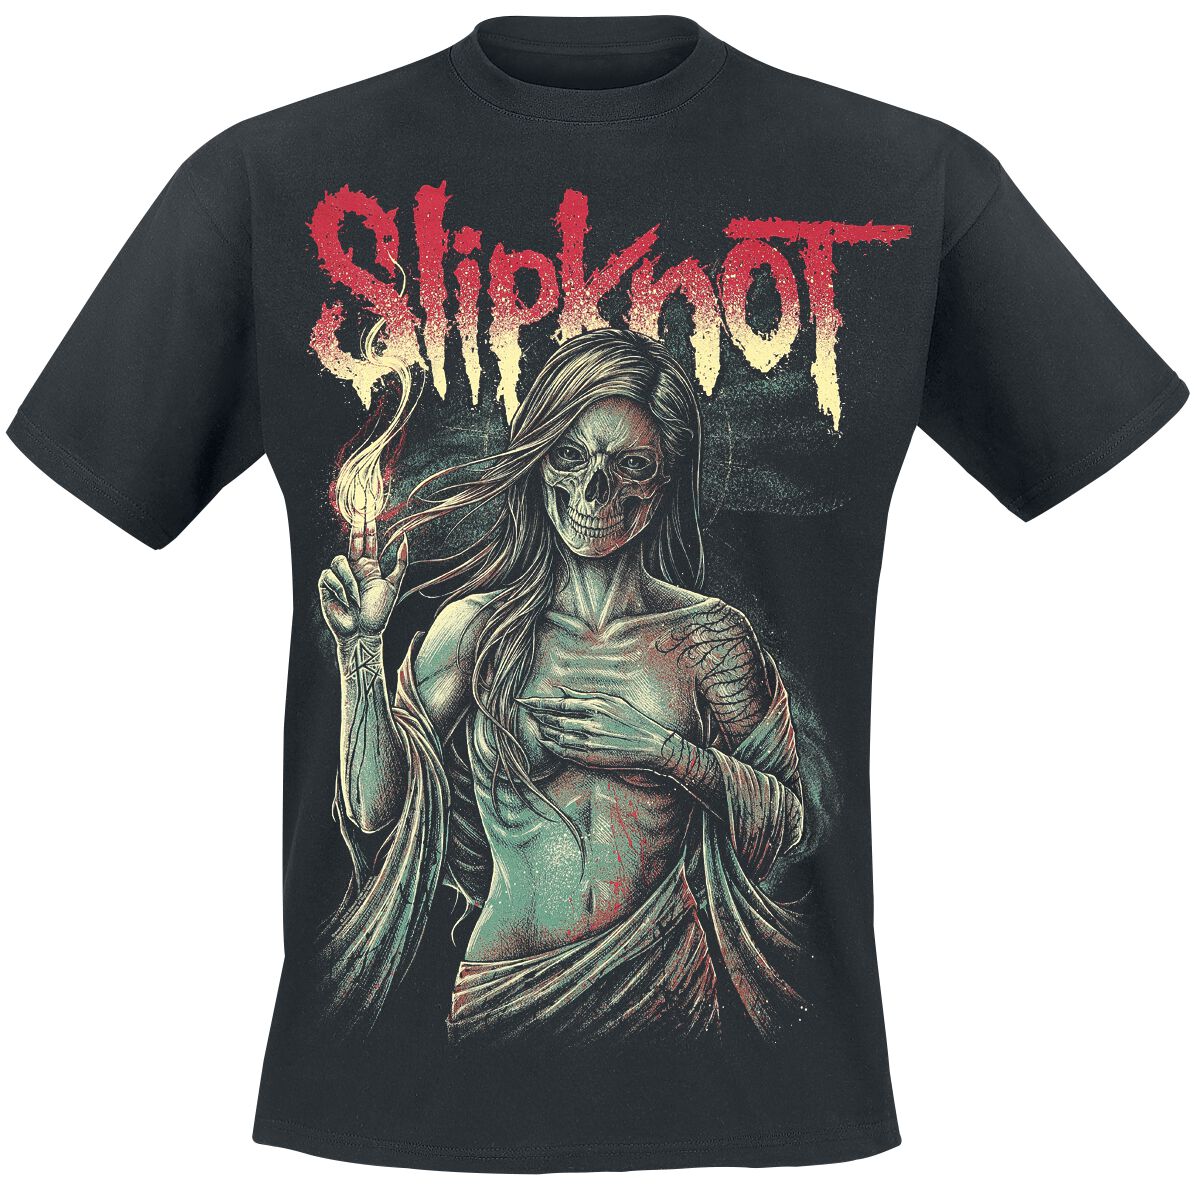 Slipknot T-Shirt - Burn Me Away - S bis 4XL - für Männer - Größe XXL - schwarz  - Lizenziertes Merchandise!